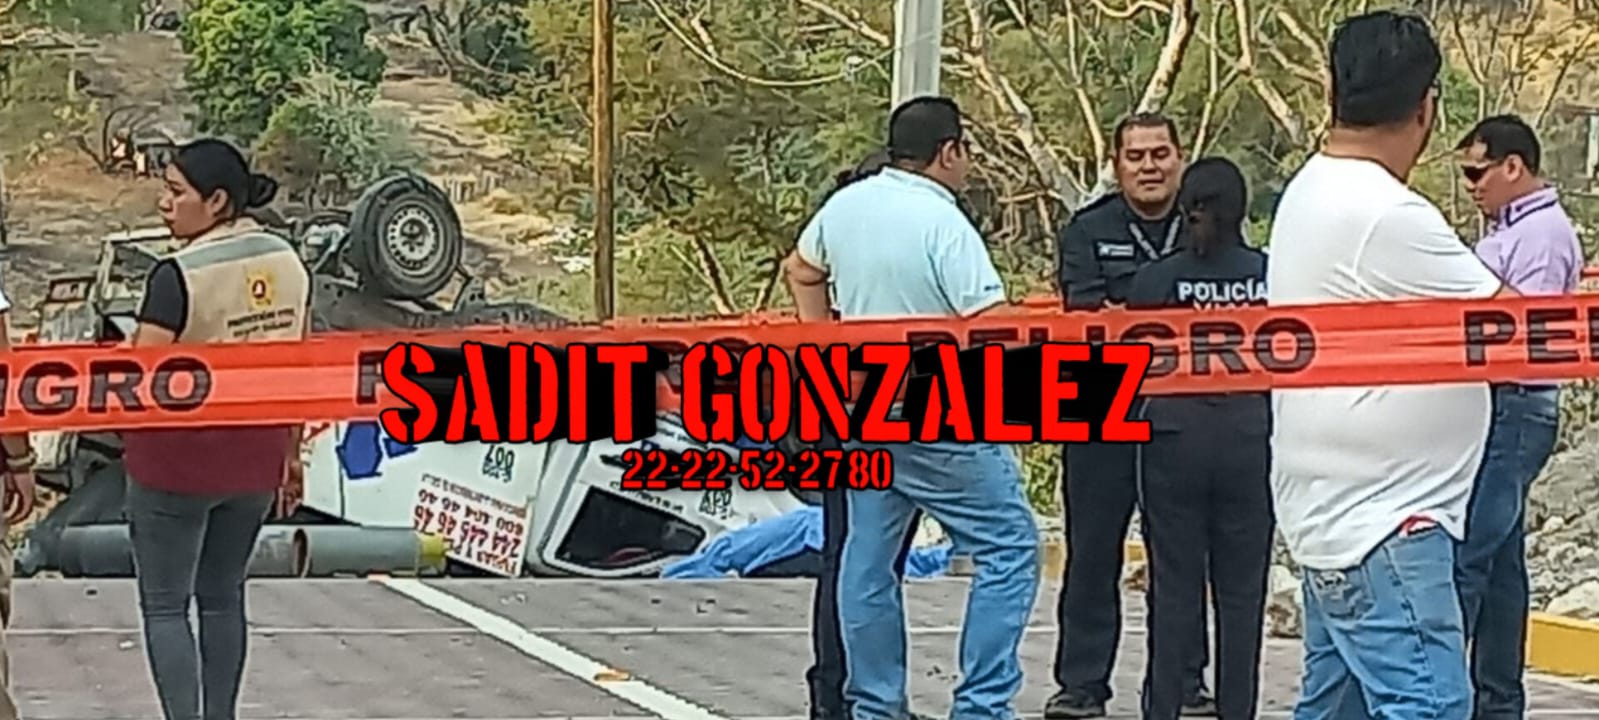 Vuelca pipa y muere el conductor en Izúcar de Matamoros